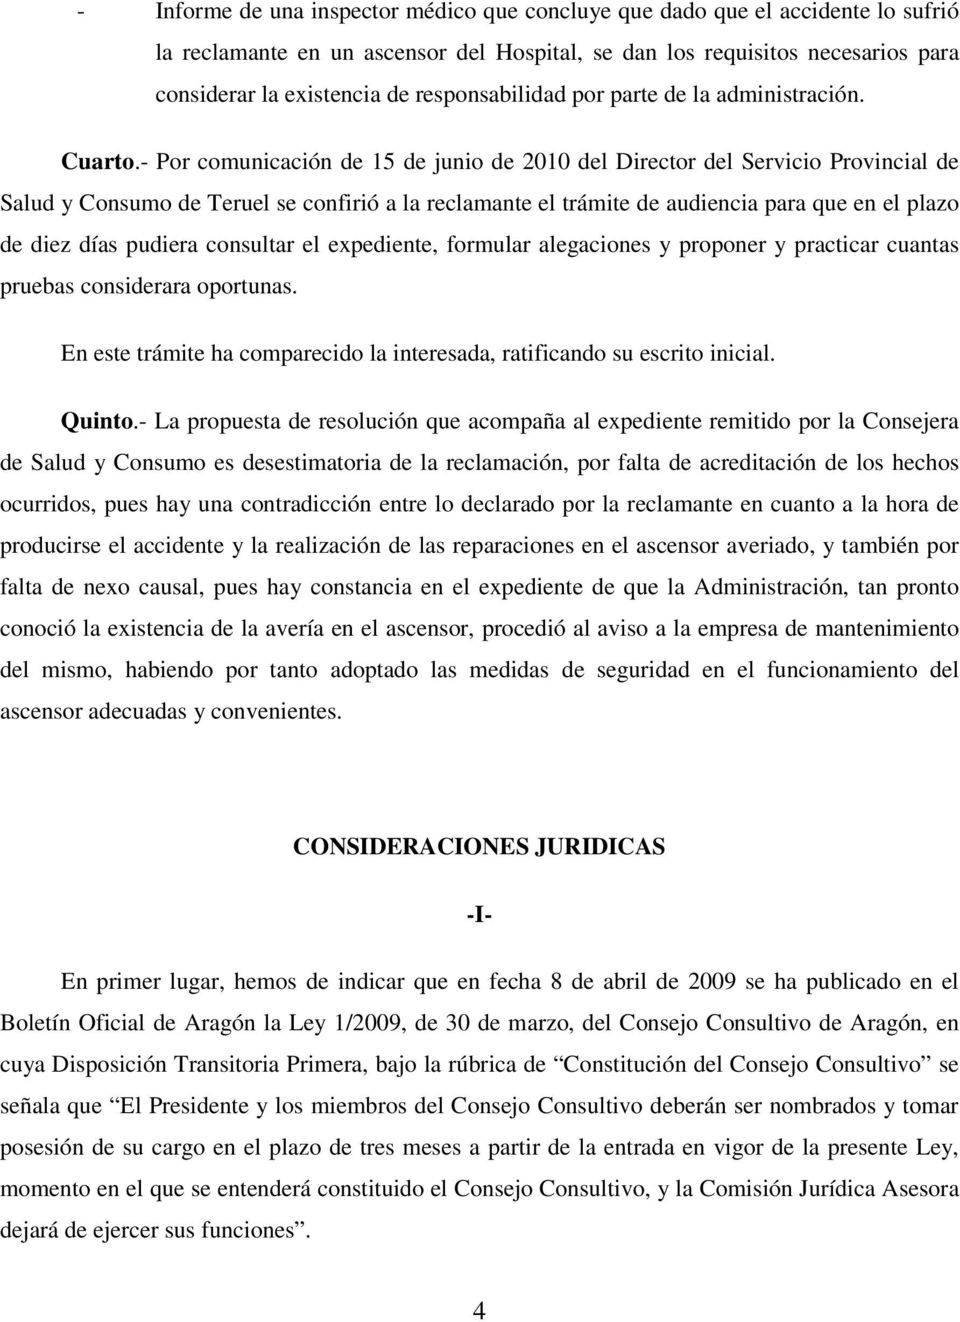 - Por comunicación de 15 de junio de 2010 del Director del Servicio Provincial de Salud y Consumo de Teruel se confirió a la reclamante el trámite de audiencia para que en el plazo de diez días